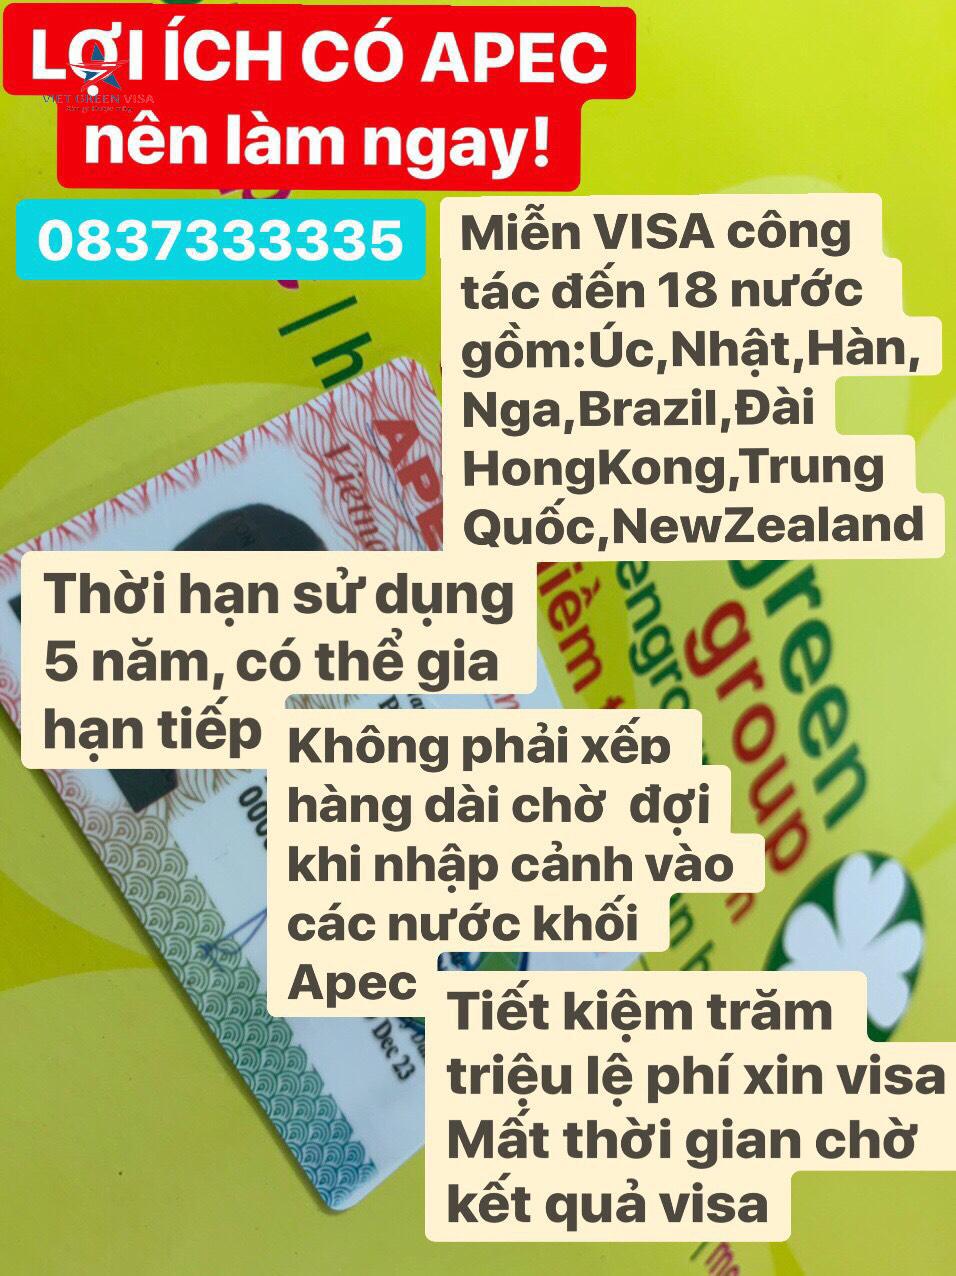 Dịch vụ làm thẻ Apec tại Đắk Nông, tư vấn thẻ Apec, thẻ apec, Đắk Nông, Viet Green Visa